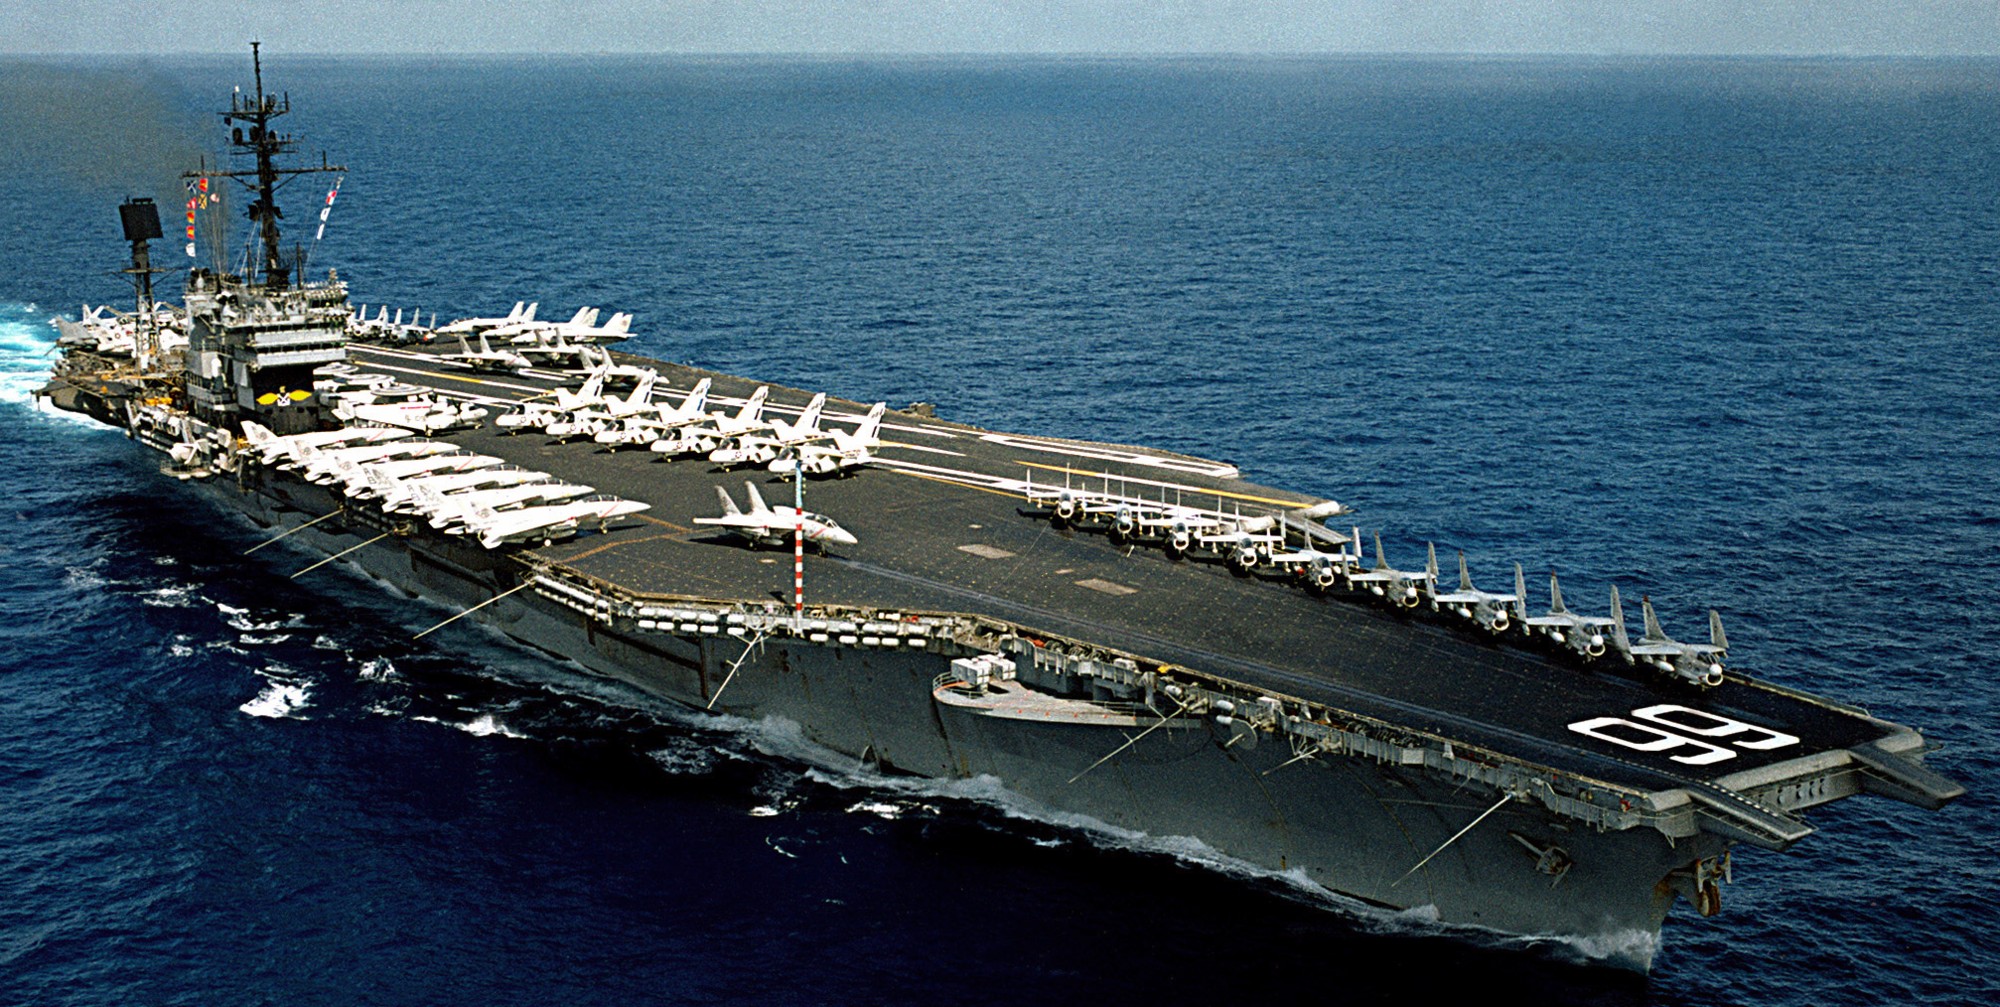 cv-66 uss america kitty hawk class aircraft carrier us navy newport news cvw-1 51x